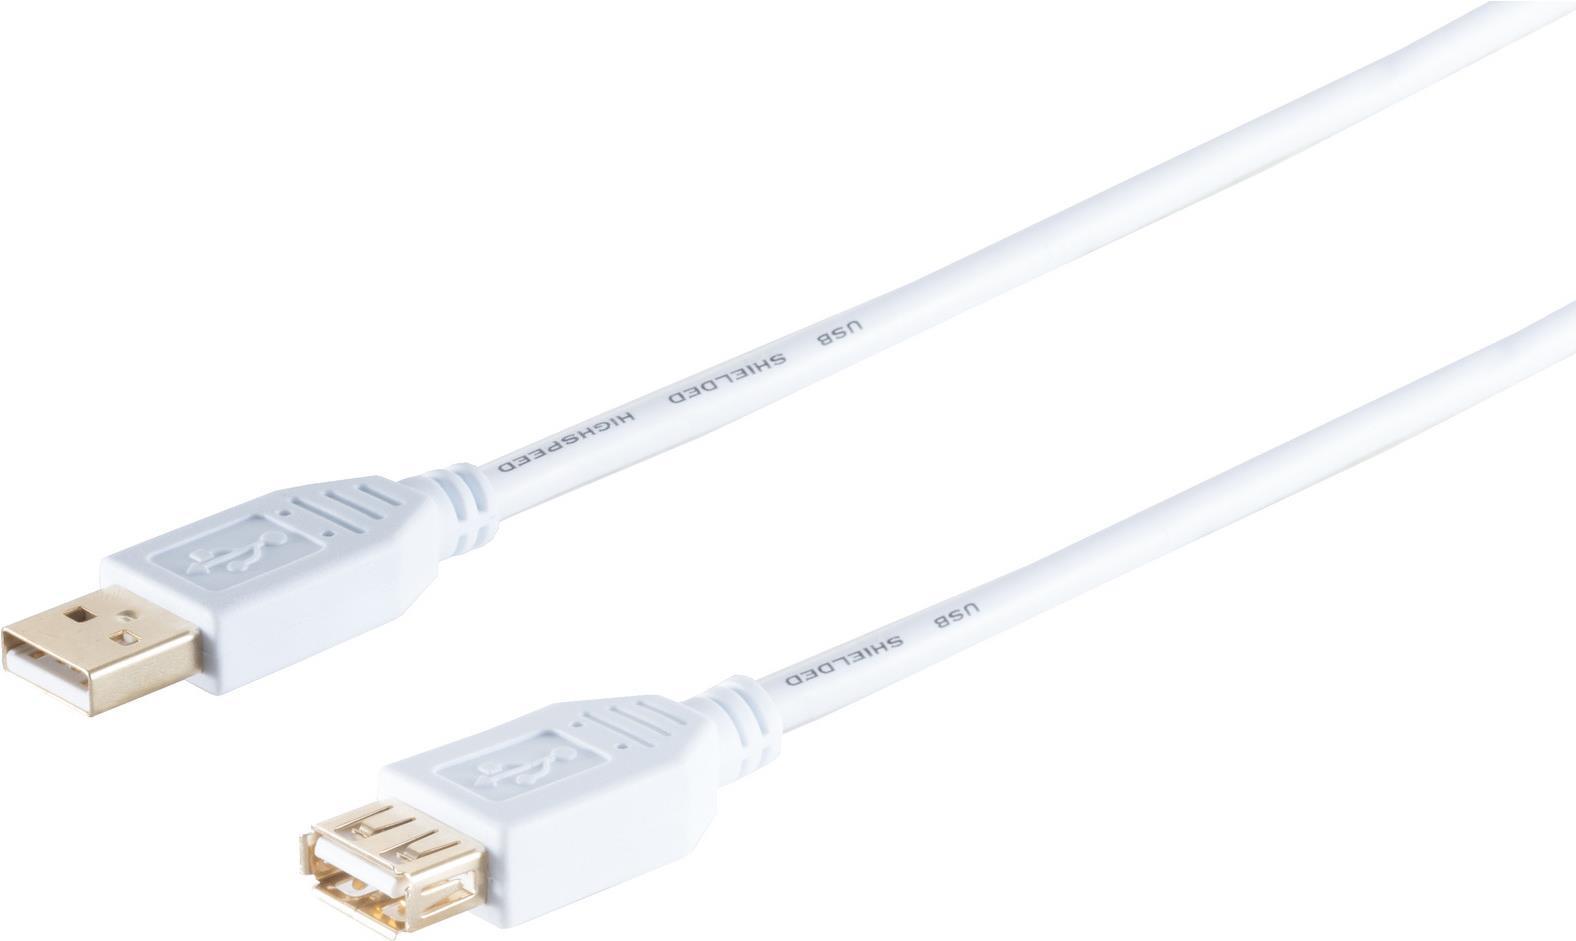 S/CONN maximum connectivity USB High Speed 2.0 Verl�ngerung, A Stecker auf A Buchse, vergoldete Kontakte, USB 2.0, wei�, 3,0m (77123-W) von ShiverPeaks